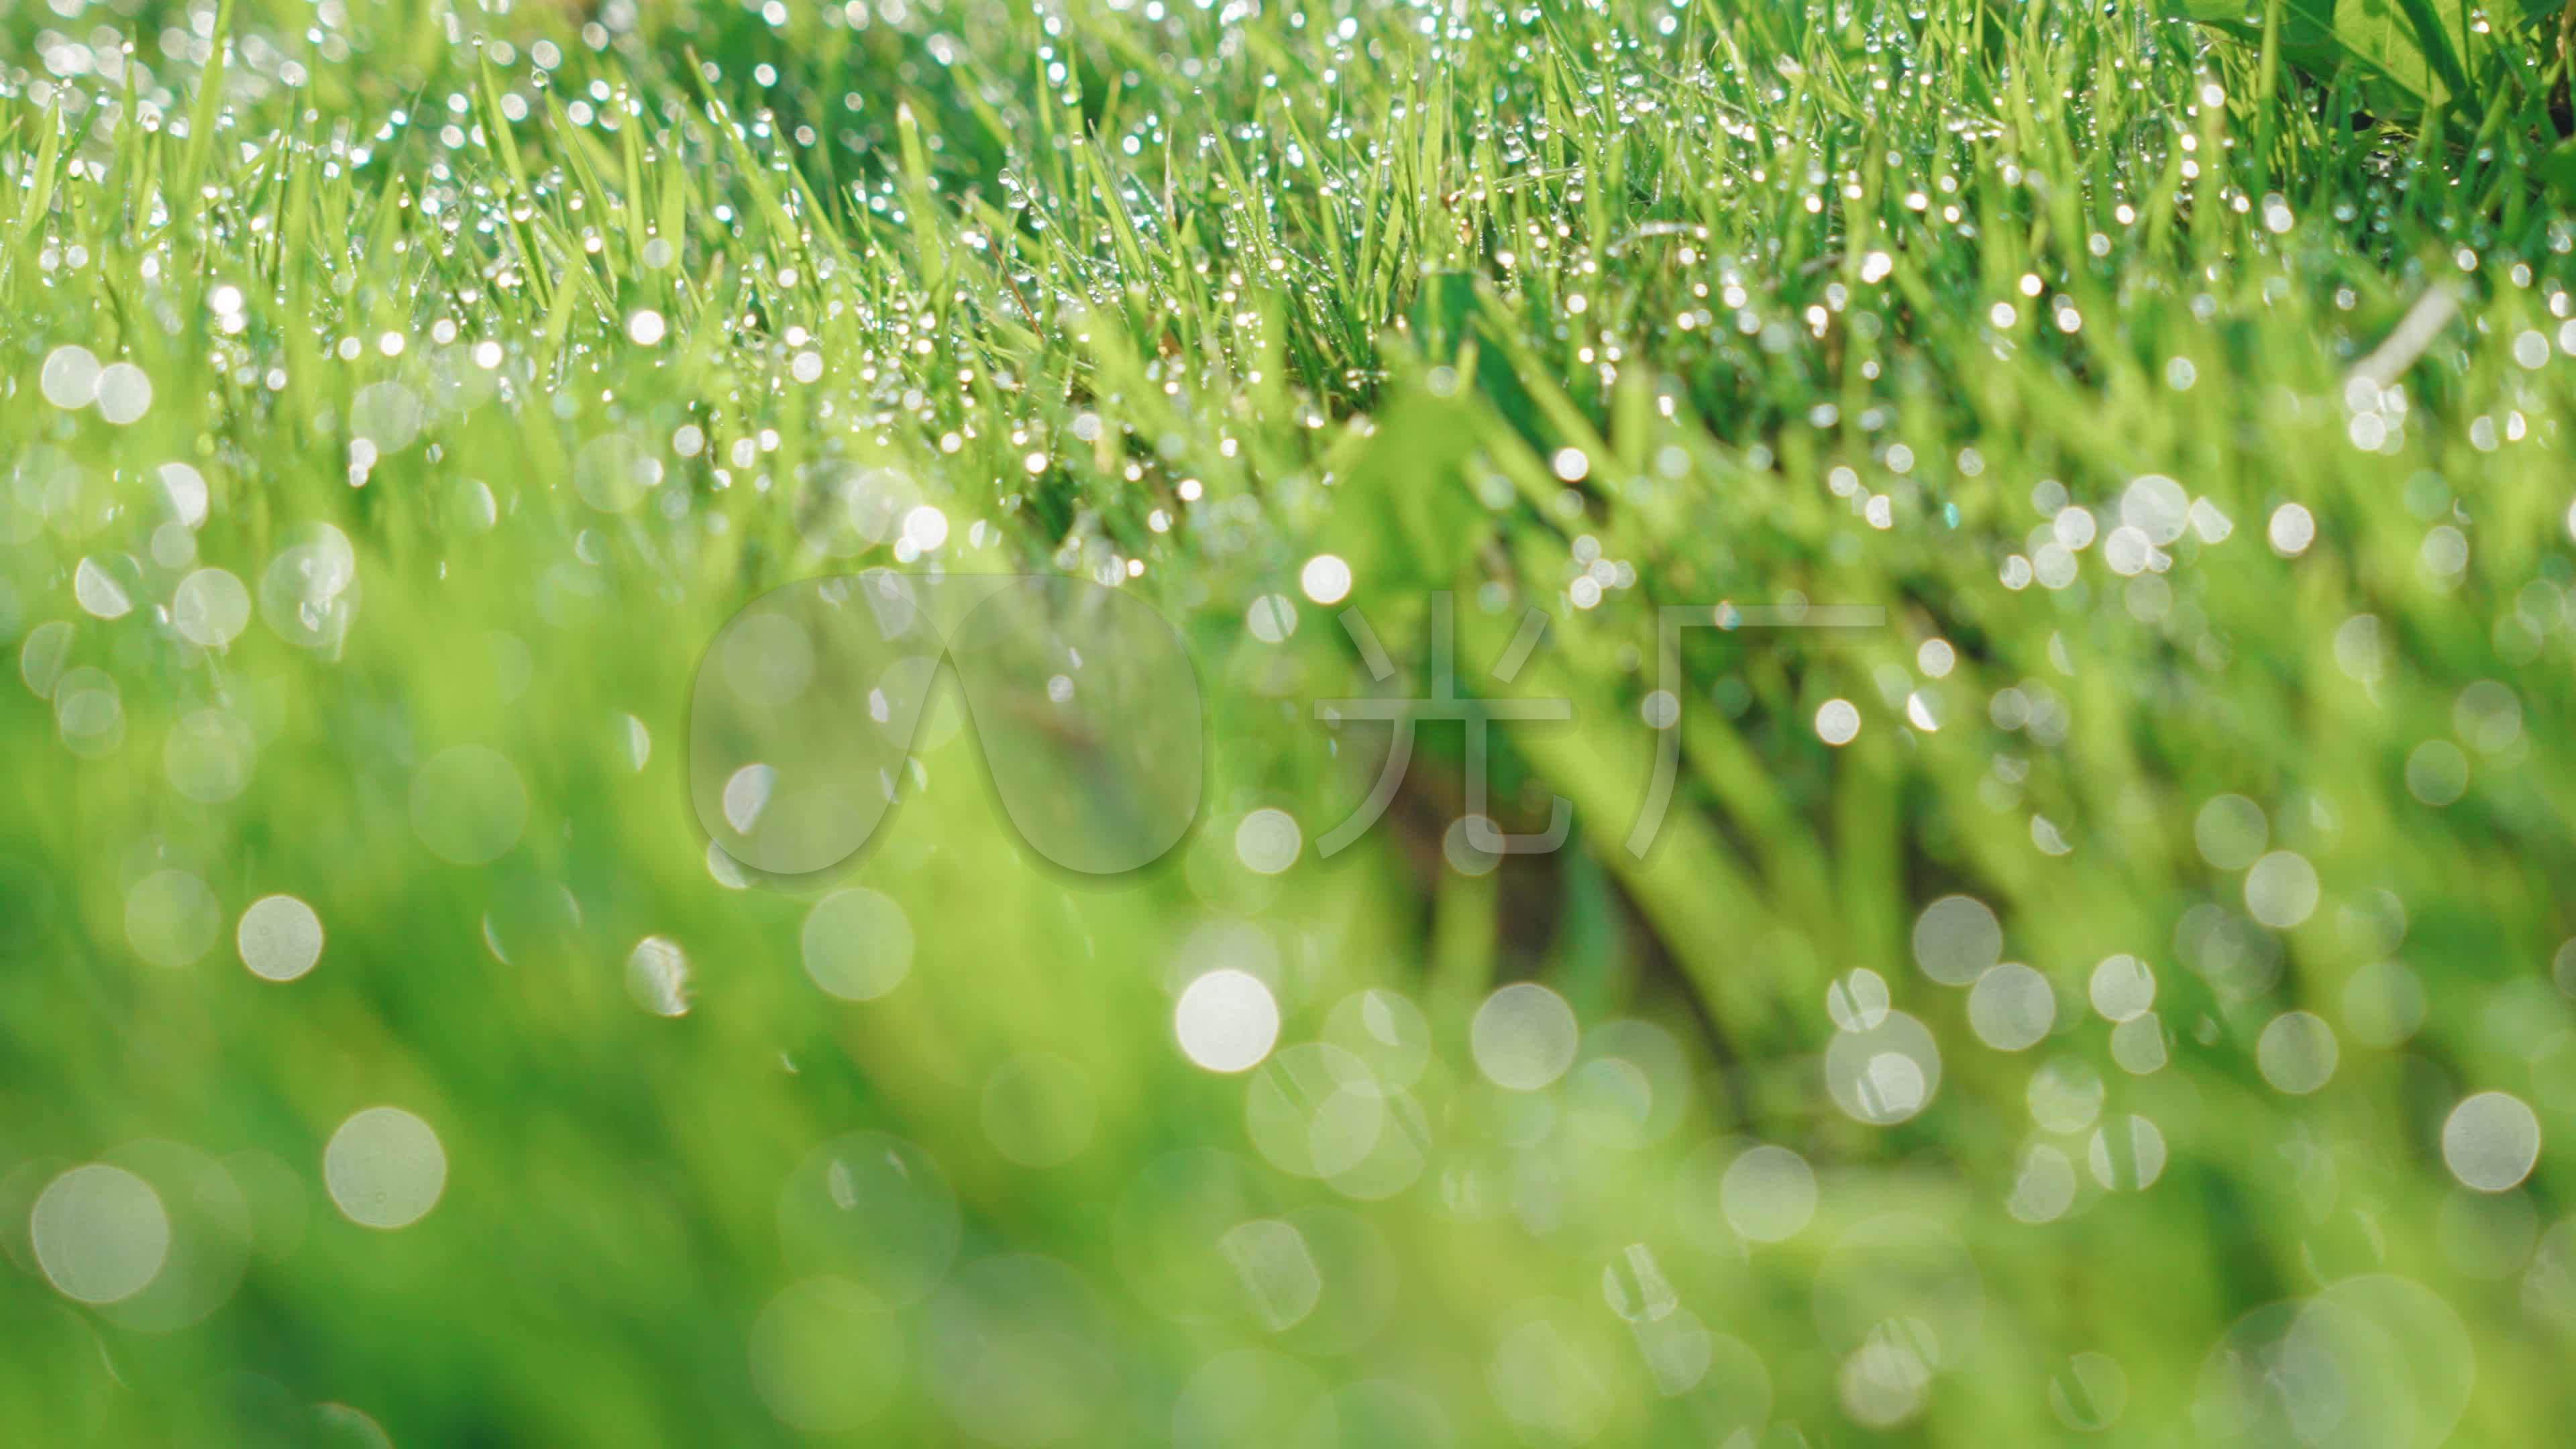 清晨的露水草4k图片-千叶网